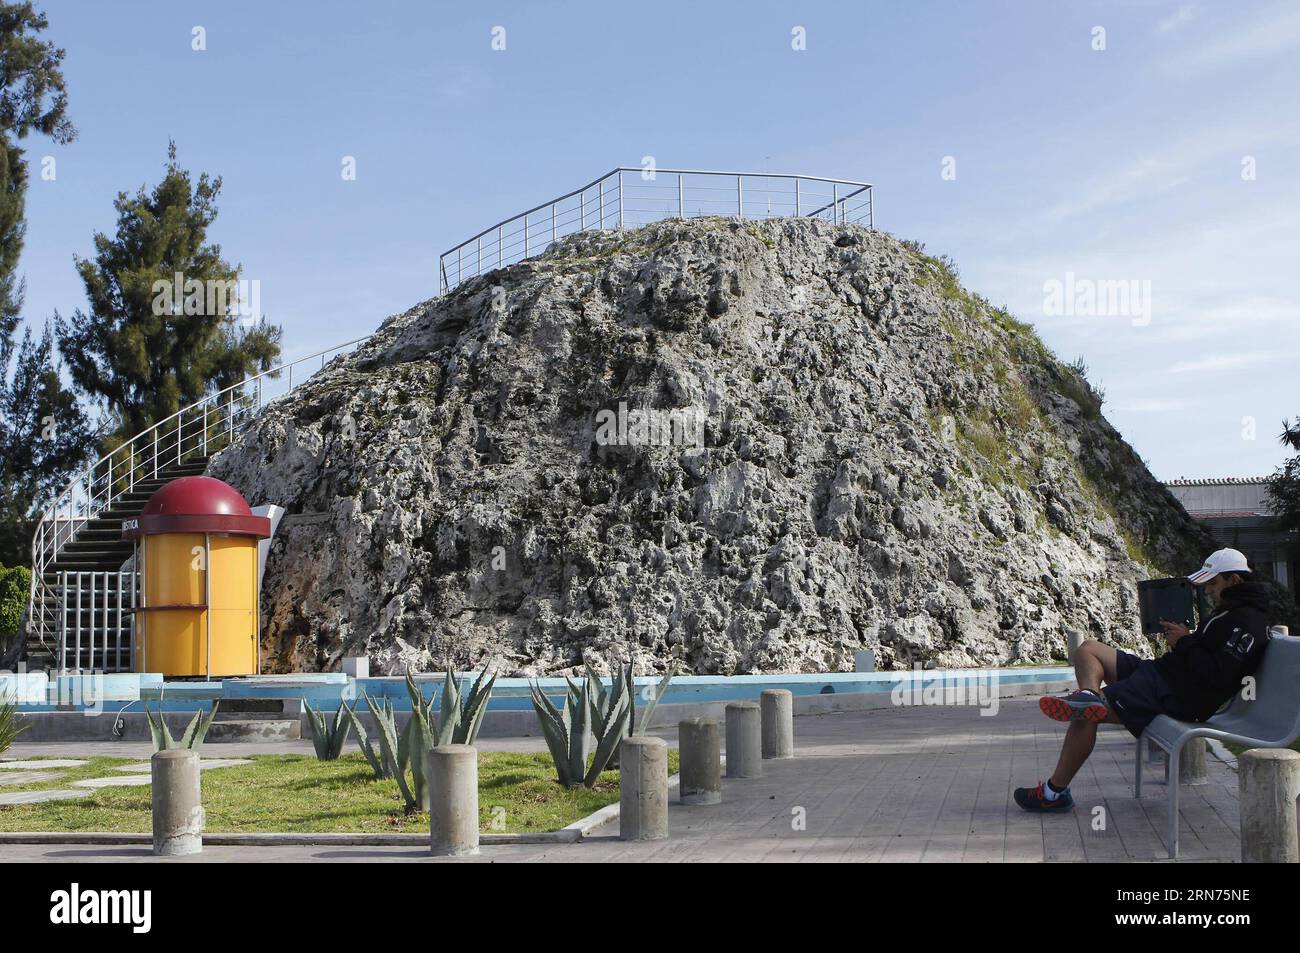 (150819) -- PUEBLA, 18 agosto 2015 -- Una persona si trova ai piedi del vulcano Cuexcomate nella città di la Libertad, nella città di Puebla, capitale dello stato di Puebla, Messico, il 18 agosto 2015. Secondo la stampa locale, il vulcano Cuexcomate, il cui nome deriva dalla parola nahuatl cuexcomatl che significa vaso di argilla o luogo da tenere, è conosciuto come il vulcano più piccolo del mondo, ma non è un vulcano, ma una formazione causata centinaia di anni fa da un flusso di acqua solforata di idrogeno, a seguito di un'eruzione del vulcano Popocatepetl. Il Cuexcomate ha un'altezza di 13 metri, un diametro che varia da 8 metri in Foto Stock